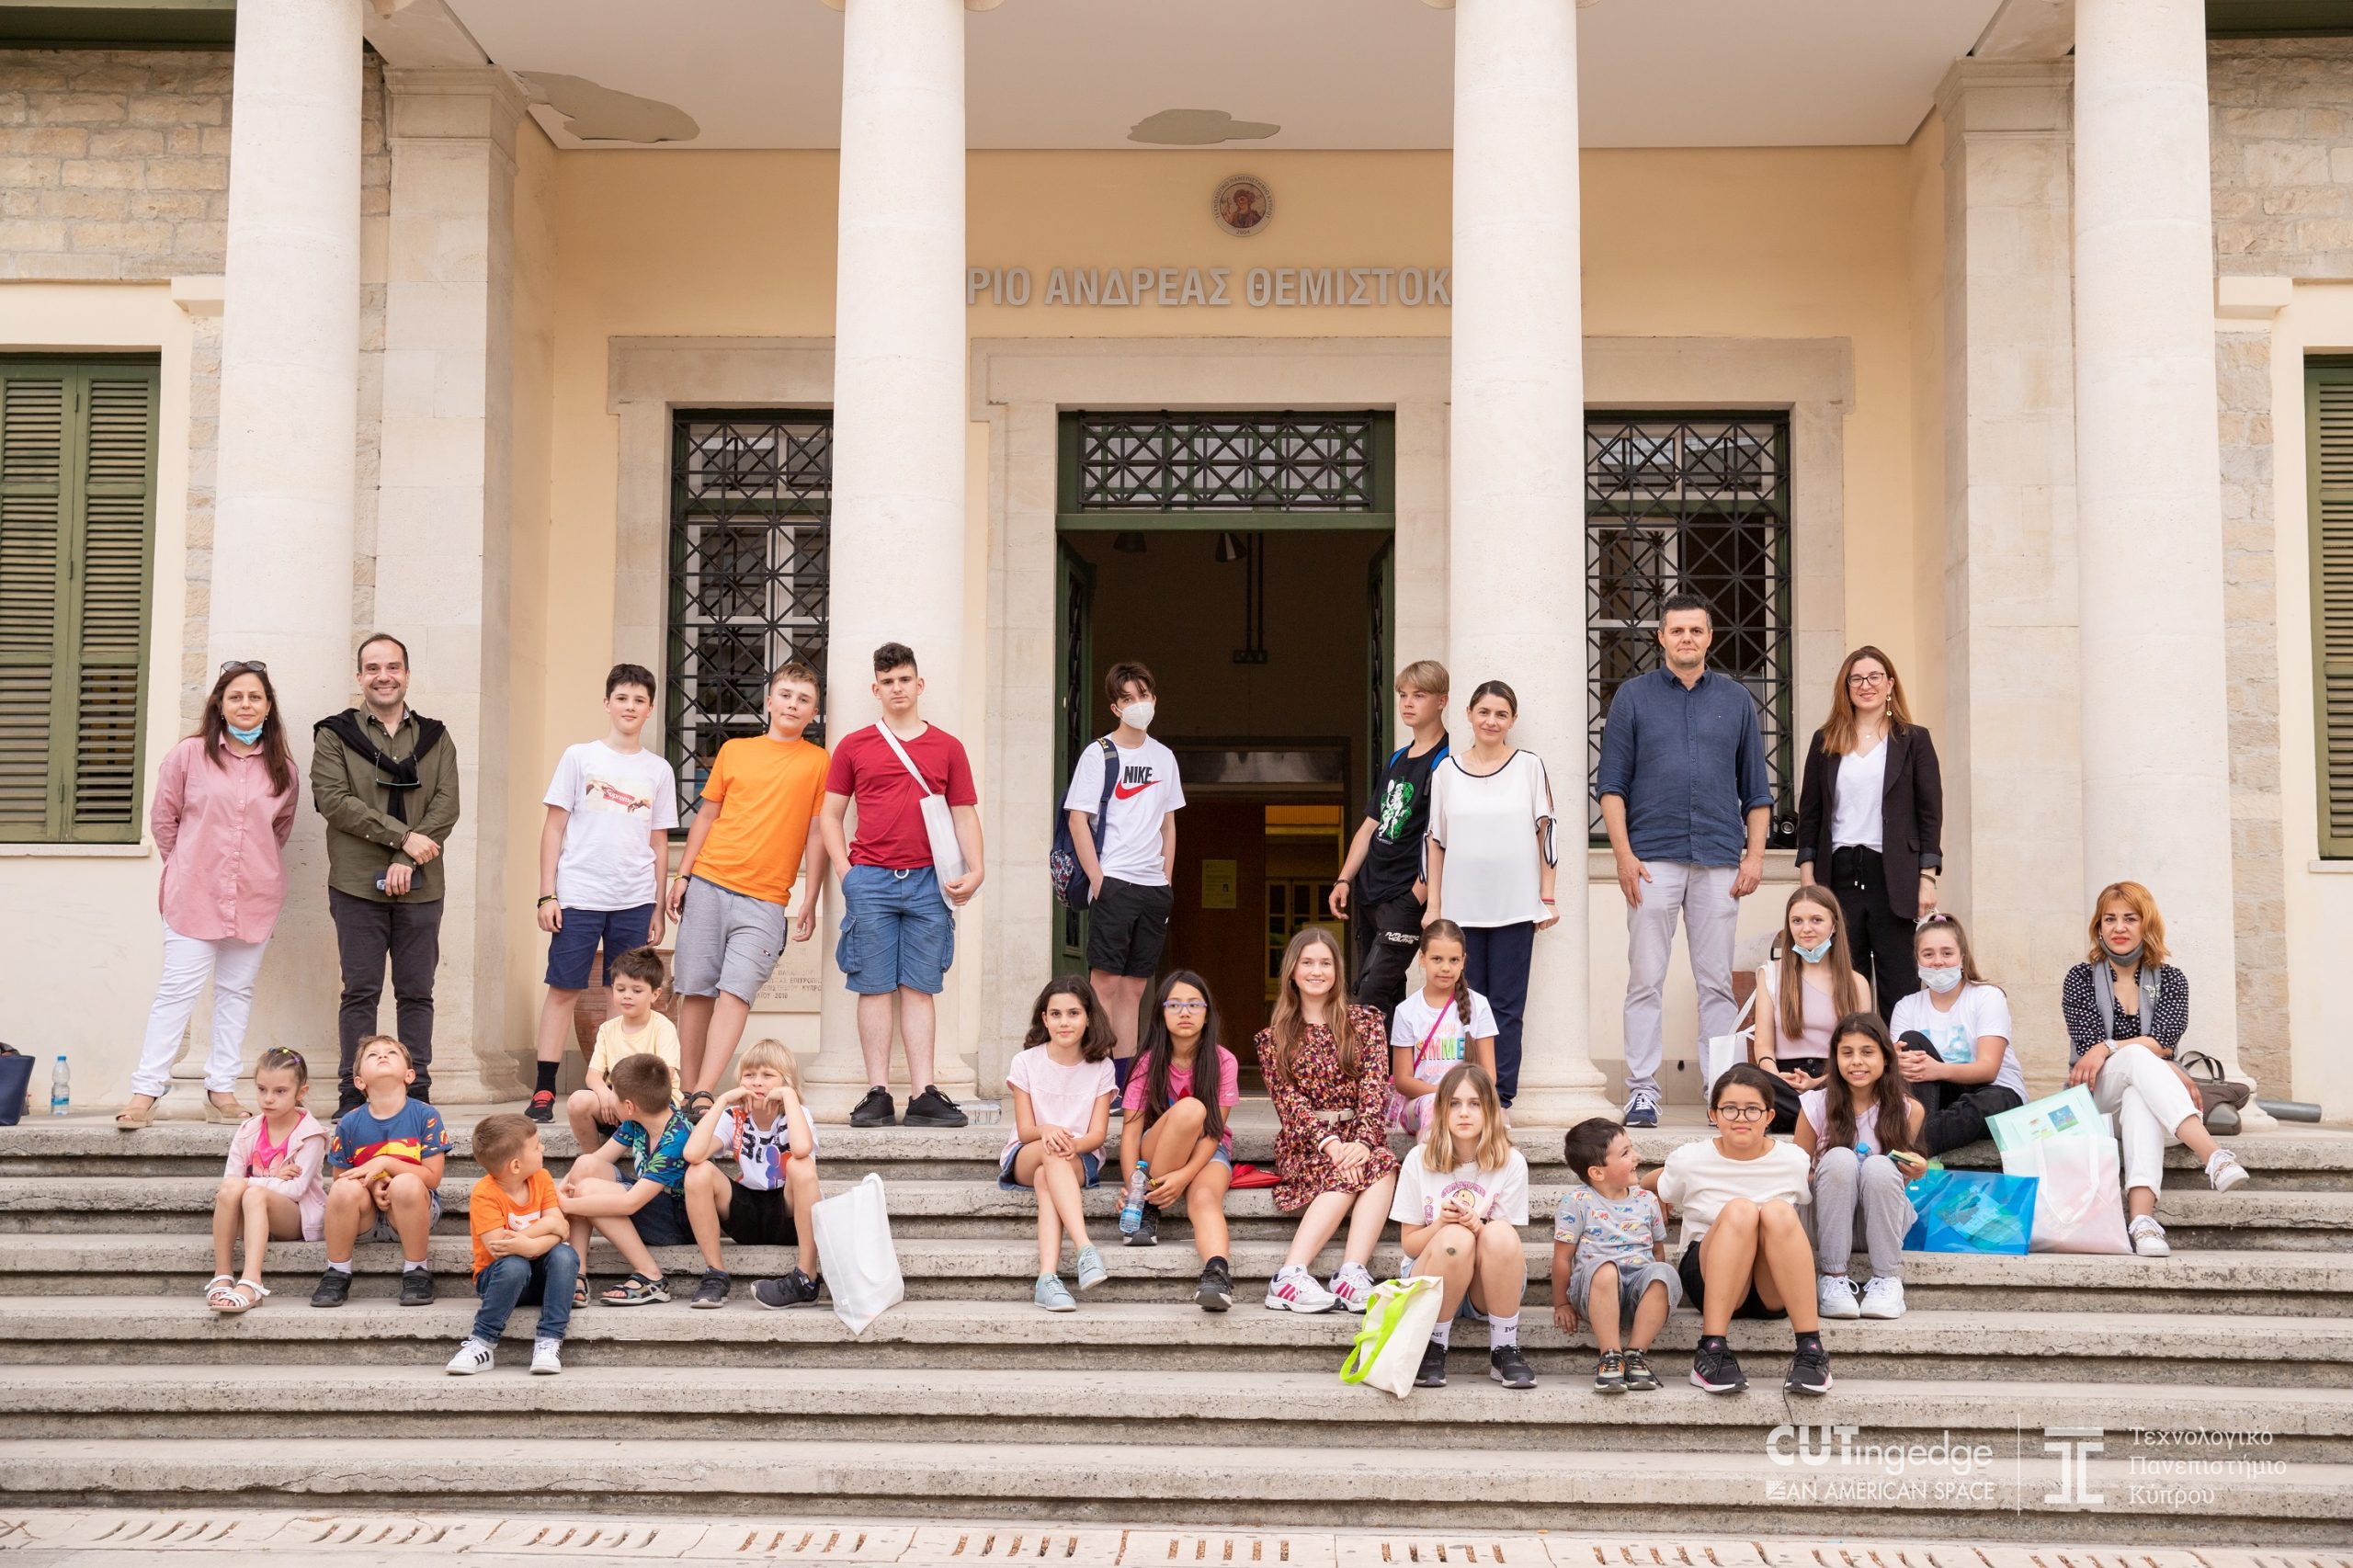 ΤΕΠΑΚ: Το πρόγραμμα εκμάθησης της ελληνικής γλώσσας για παιδιά από την Ουκρανία θα λειτουργήσει και το Καλοκαίρι